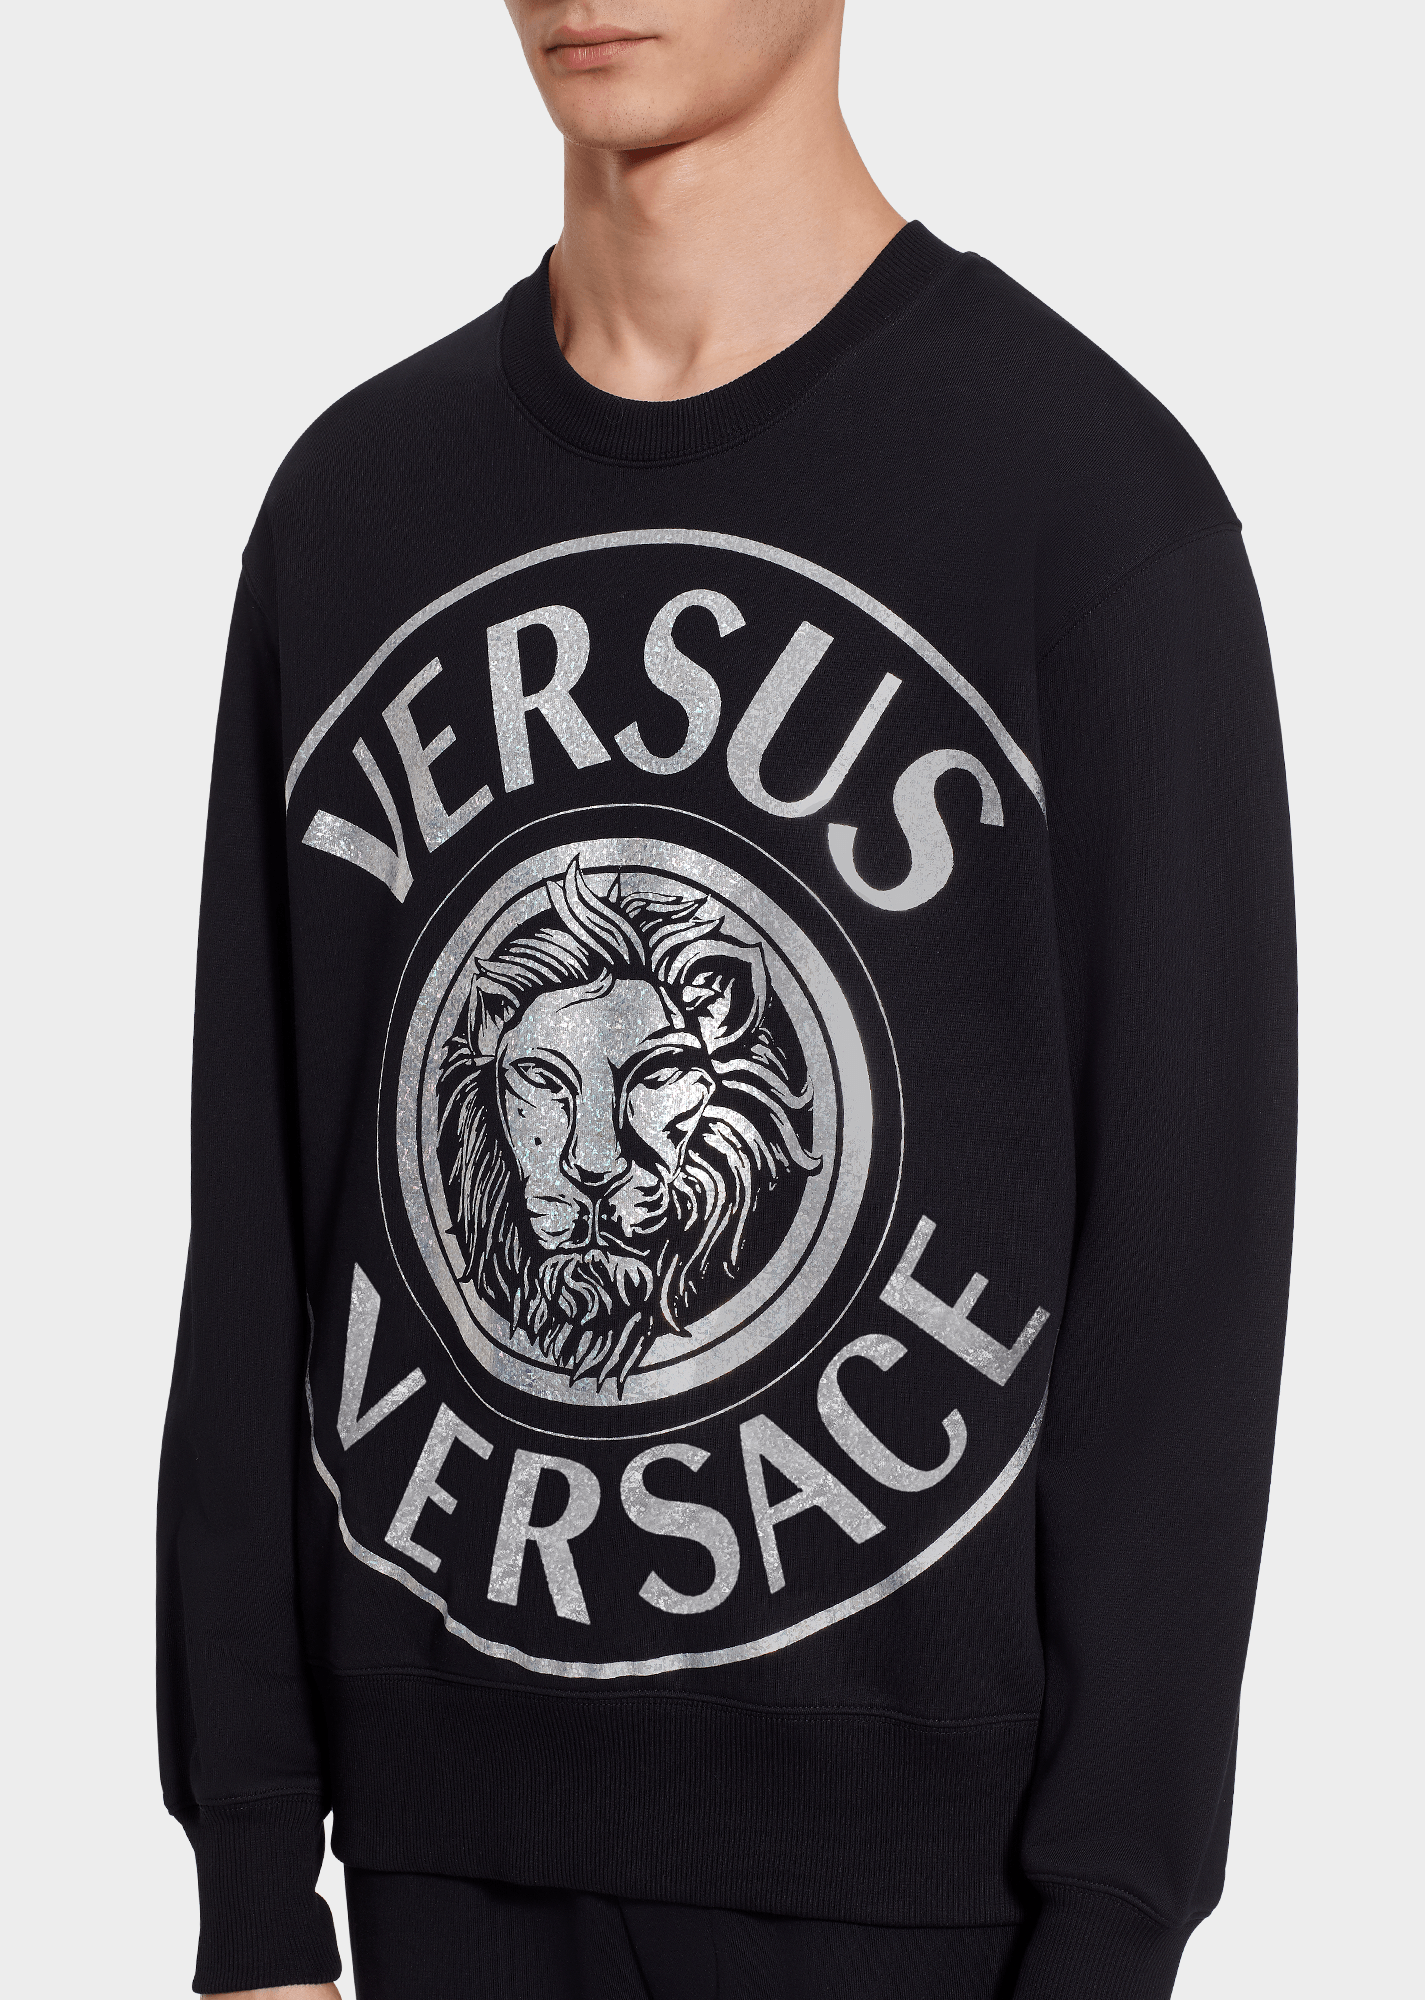 Versace with Lion Logo - Versus Versace Lion Head Logo Sweatshirt for Men. Online Store EU